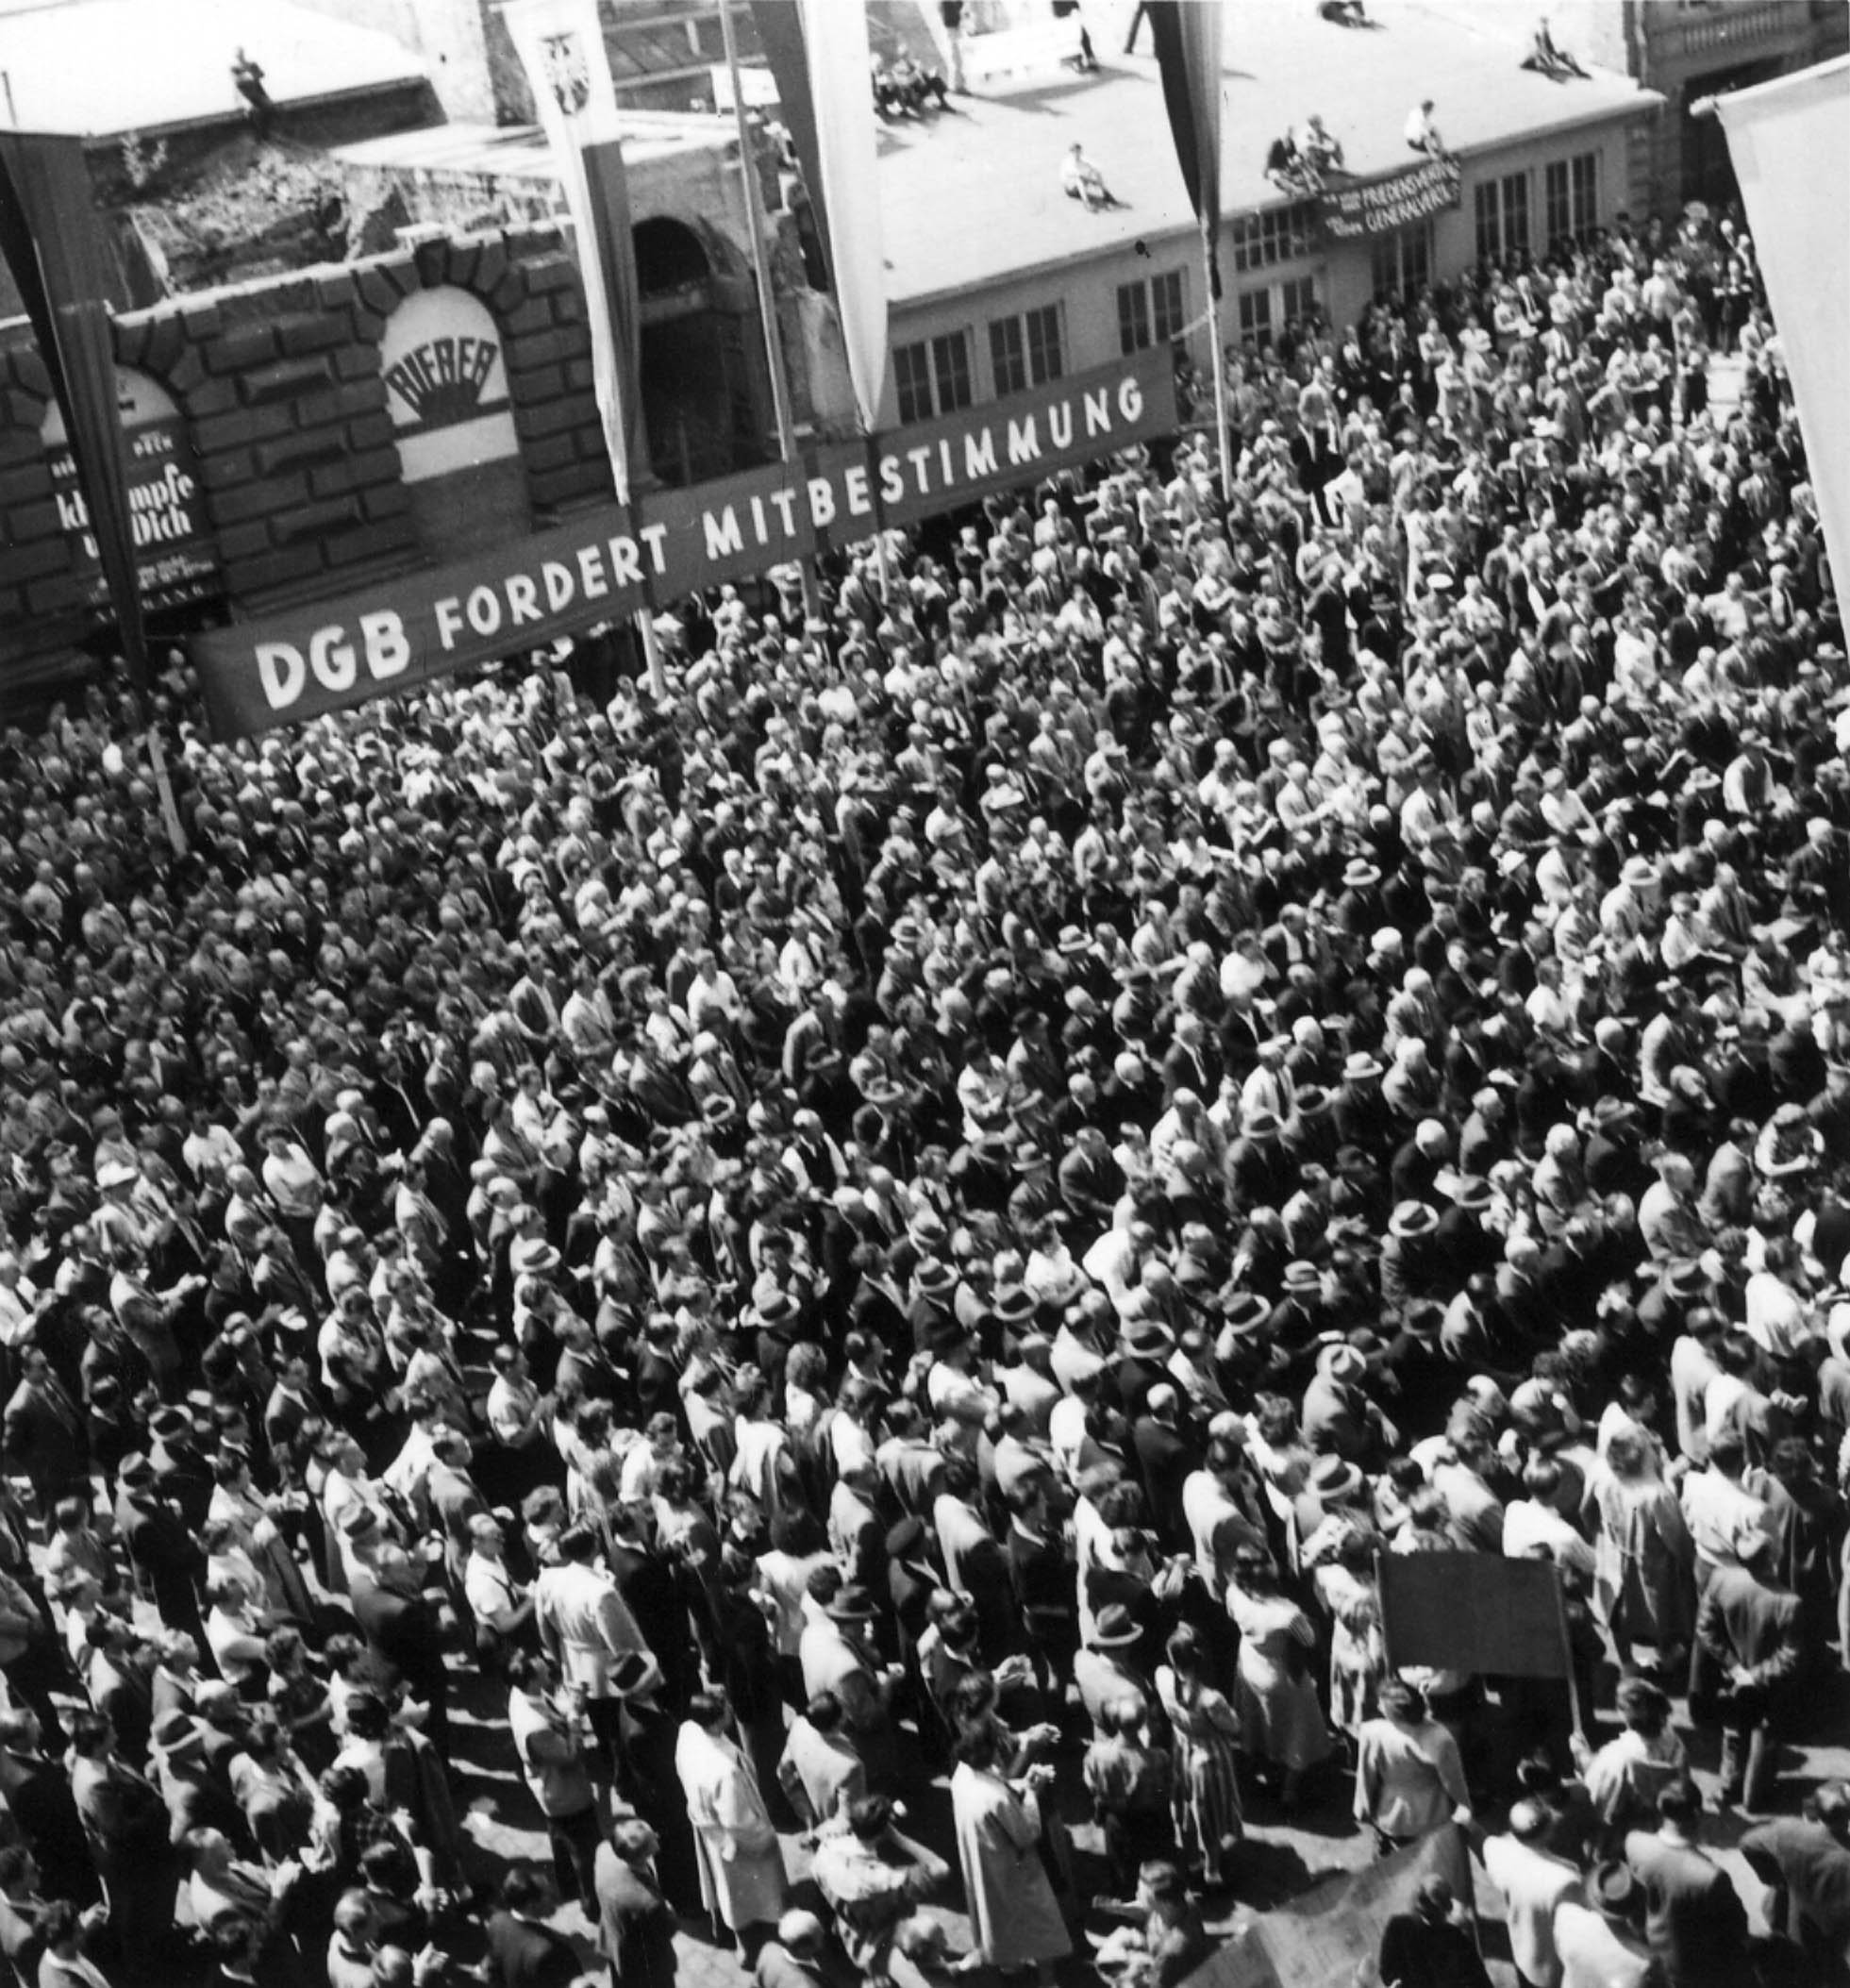 Schwarz-Weiß Fotografie von Menschenmenge bei Kundgebung, im Hintergrund Transparent "DGB fordert Mitbestimmung"